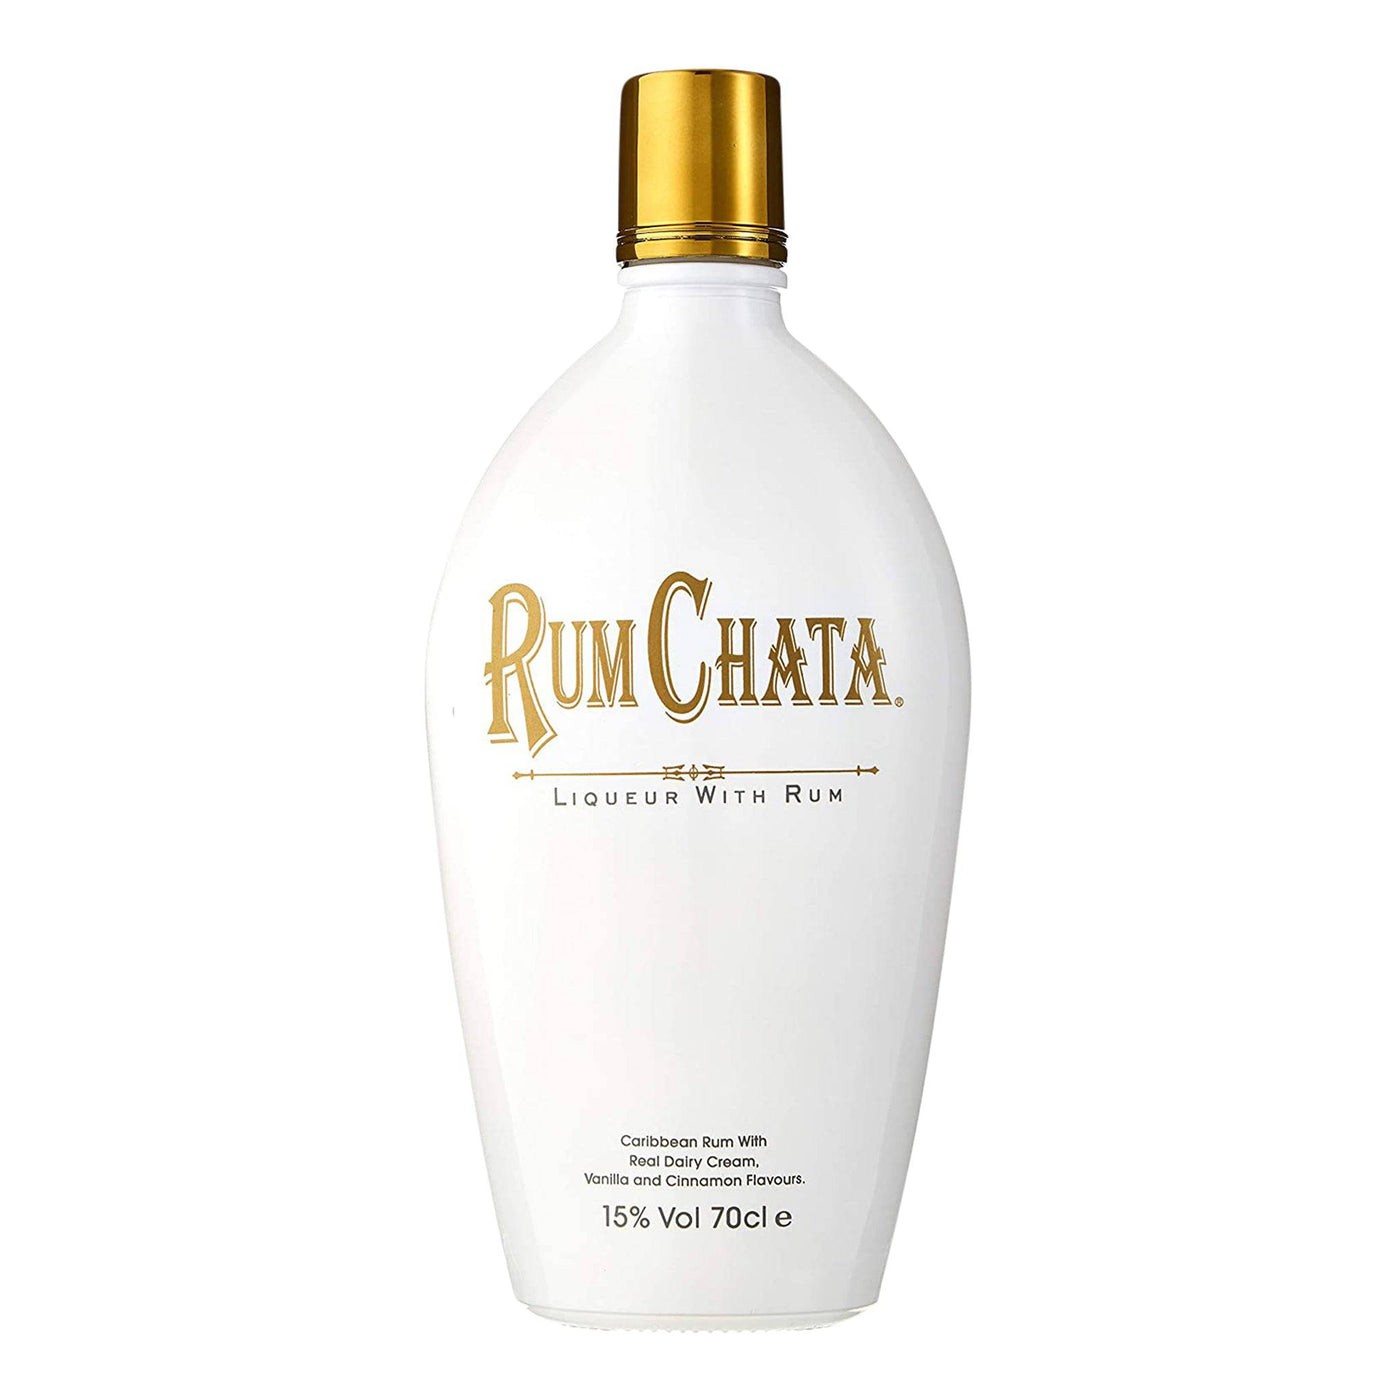 Rumchata Rum - Spiritly